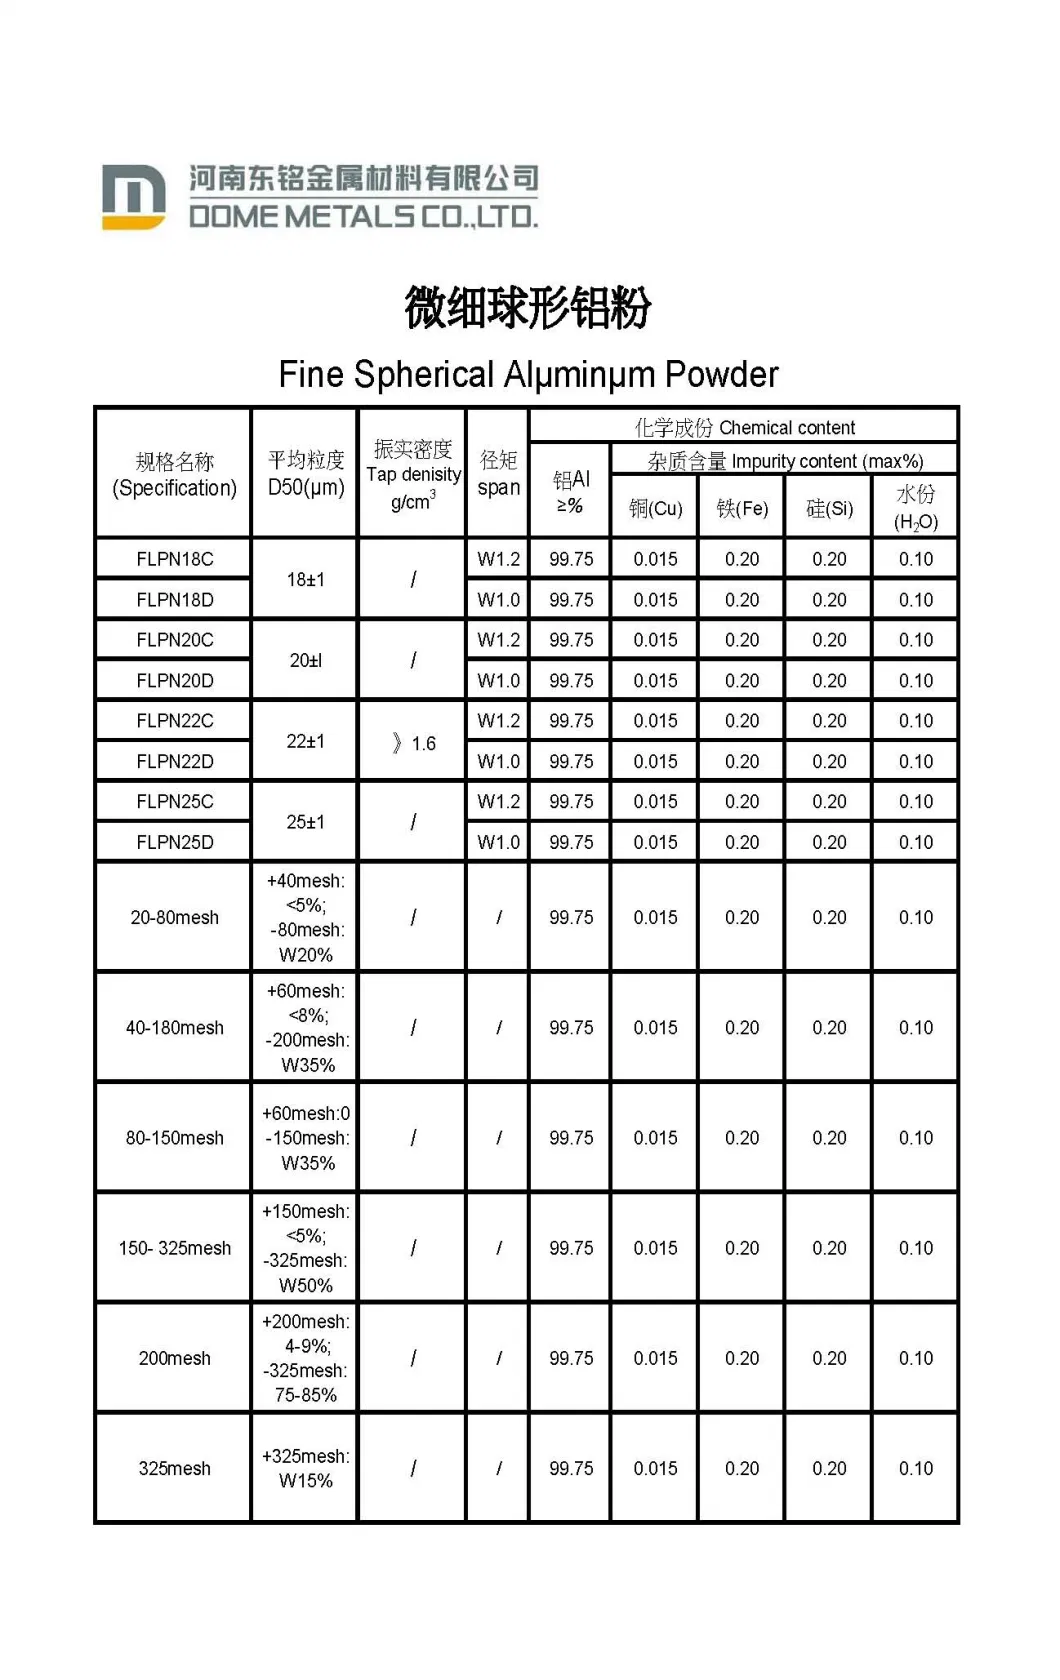 Fine Spherical Aluminum Powder for Conductive Paste (1-5um)